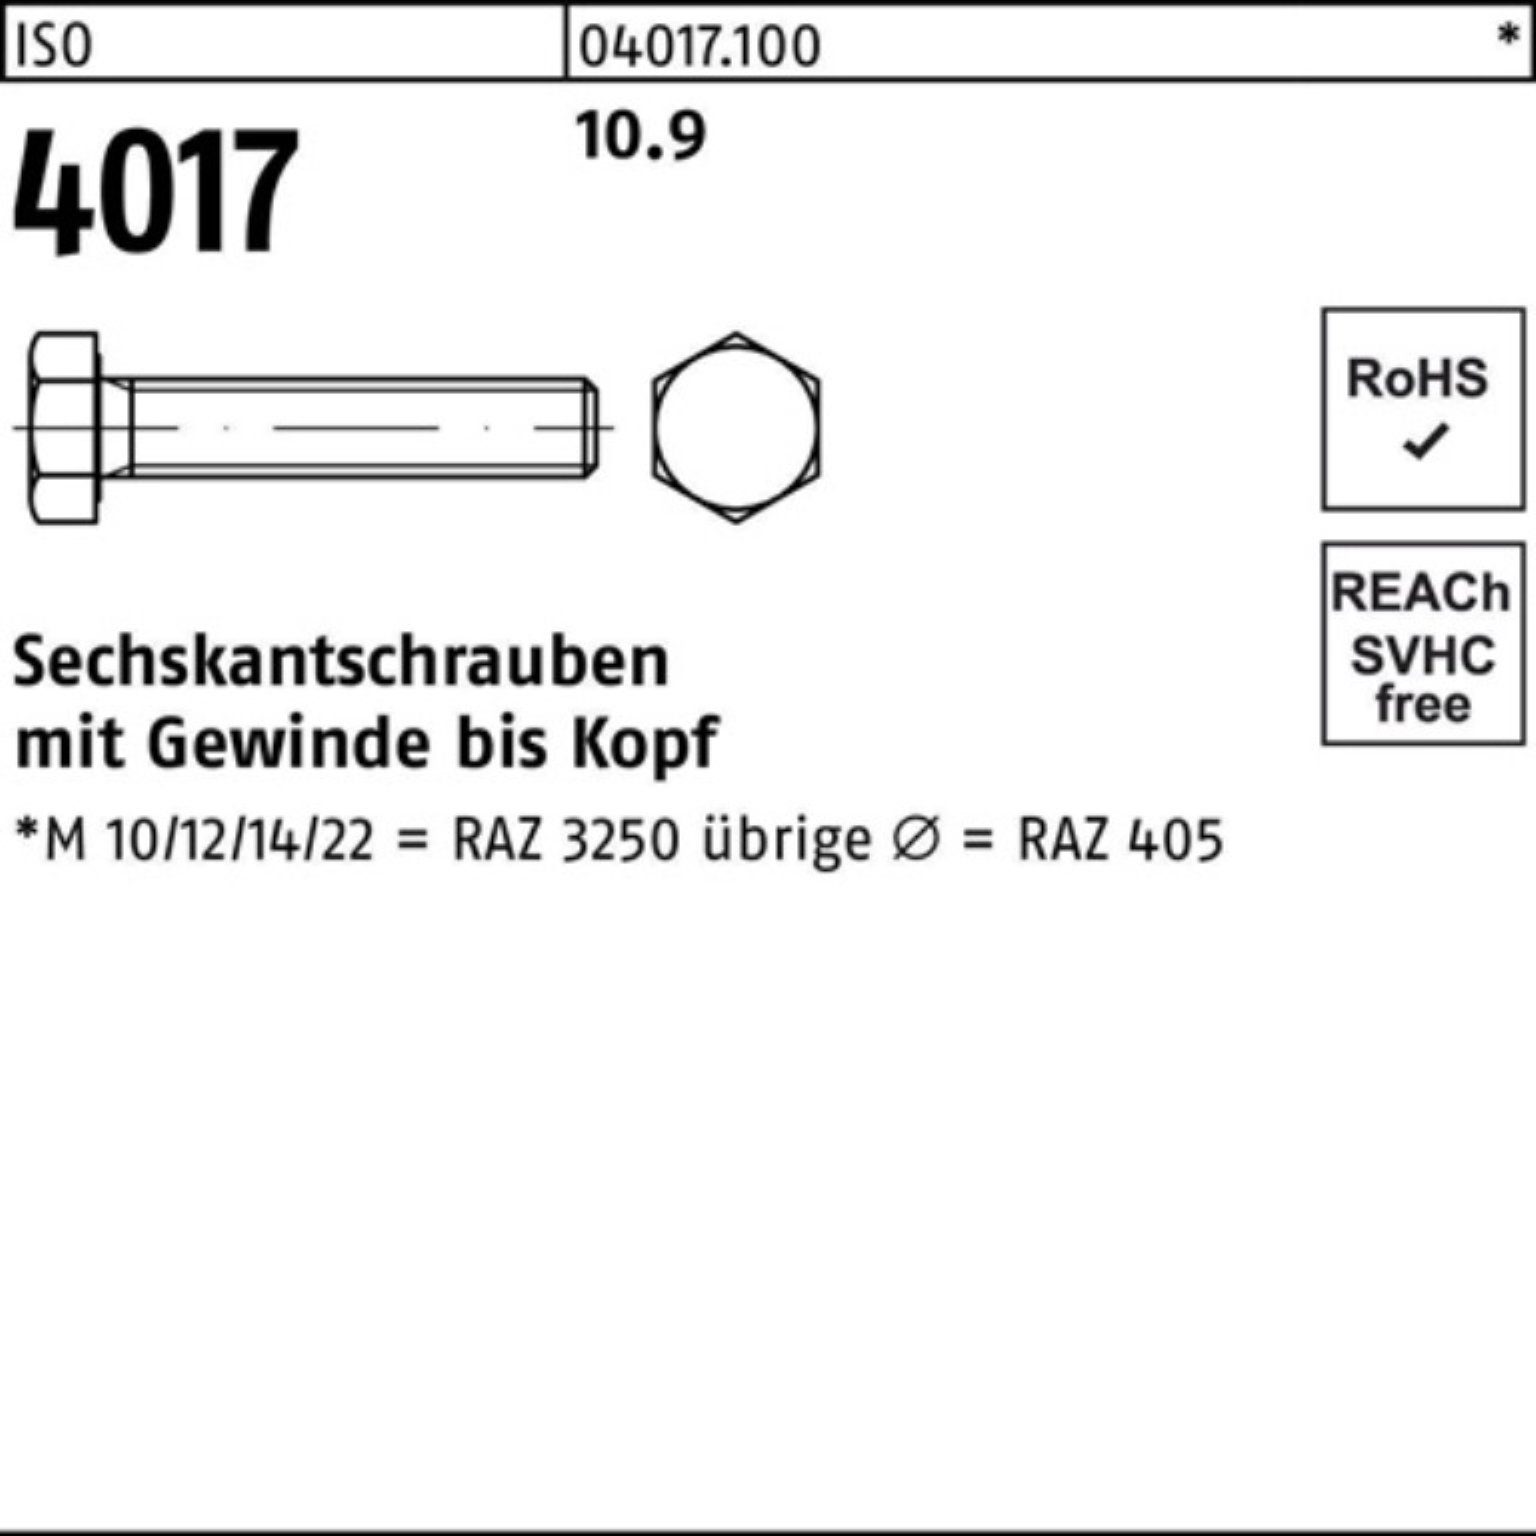 Sechskantschraube 100 M12x 4 100er ISO Pack Bufab Stück Sechskantschraube 10.9 60 ISO VG 4017